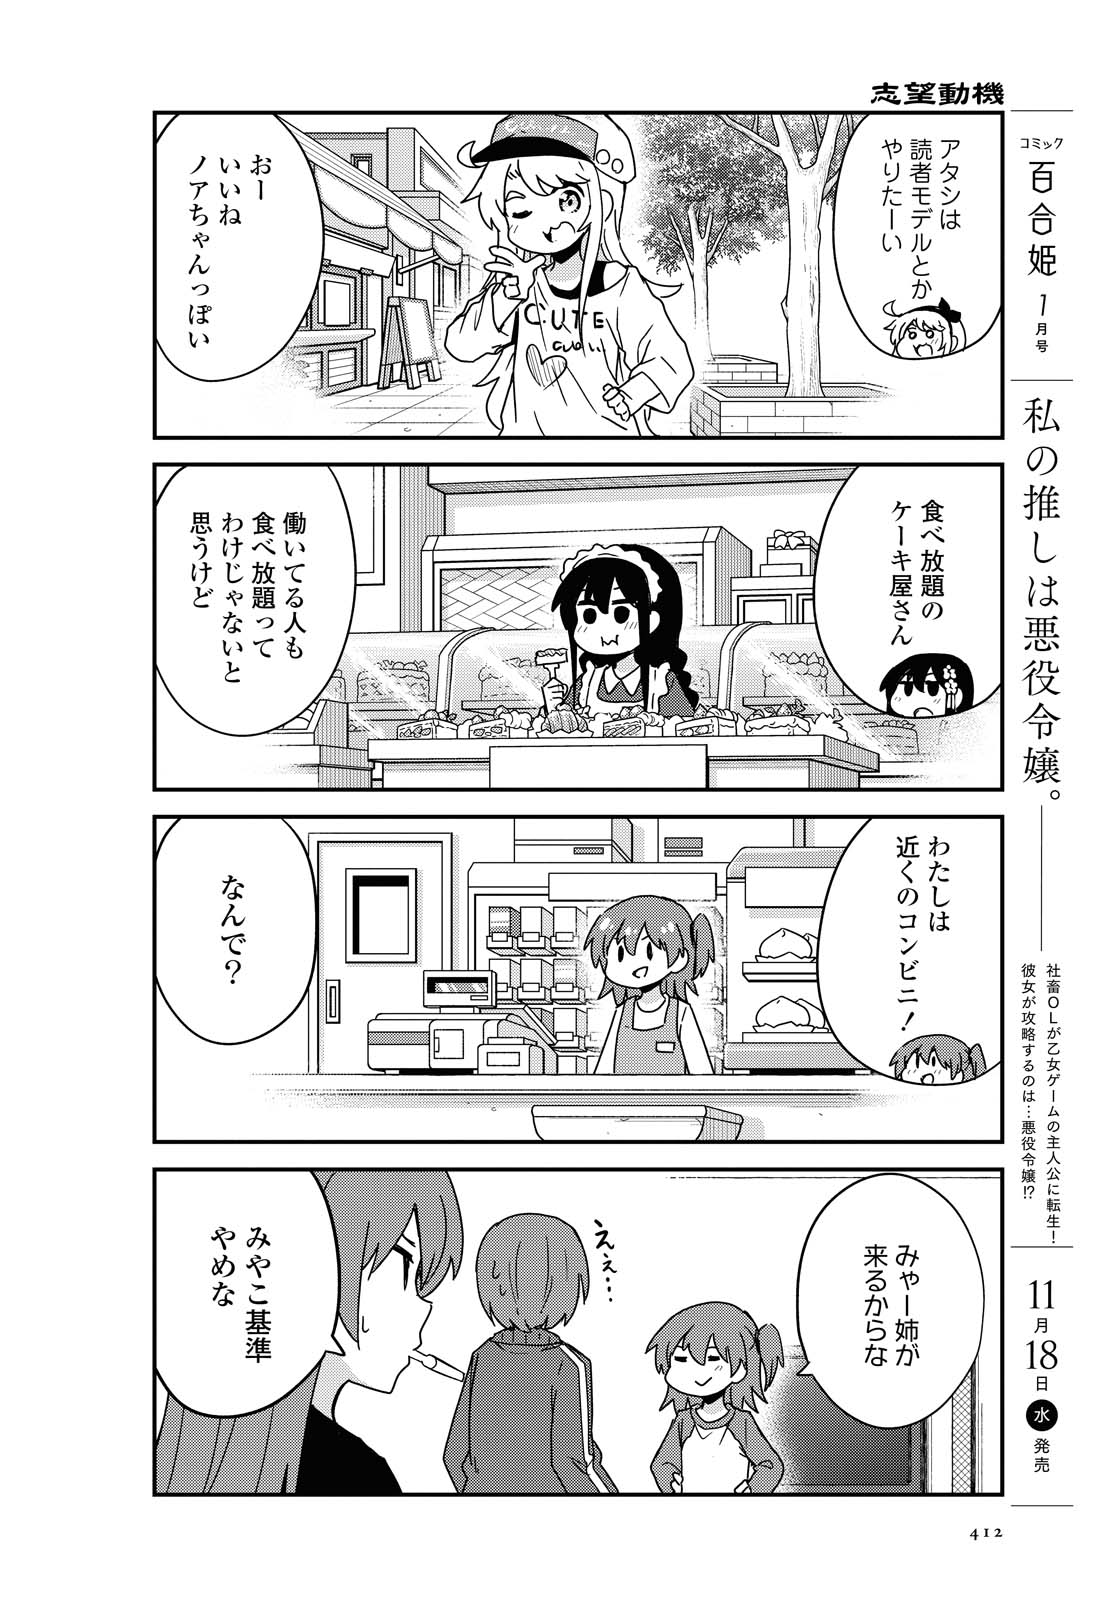 Watashi ni Tenshi ga Maiorita! - Chapter 73 - Page 4